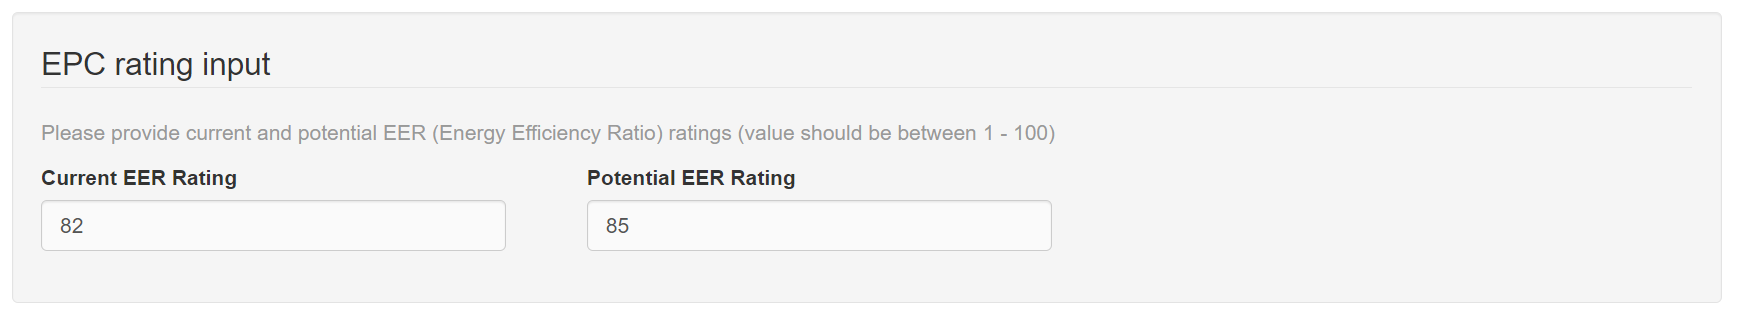 EPC rating input.png